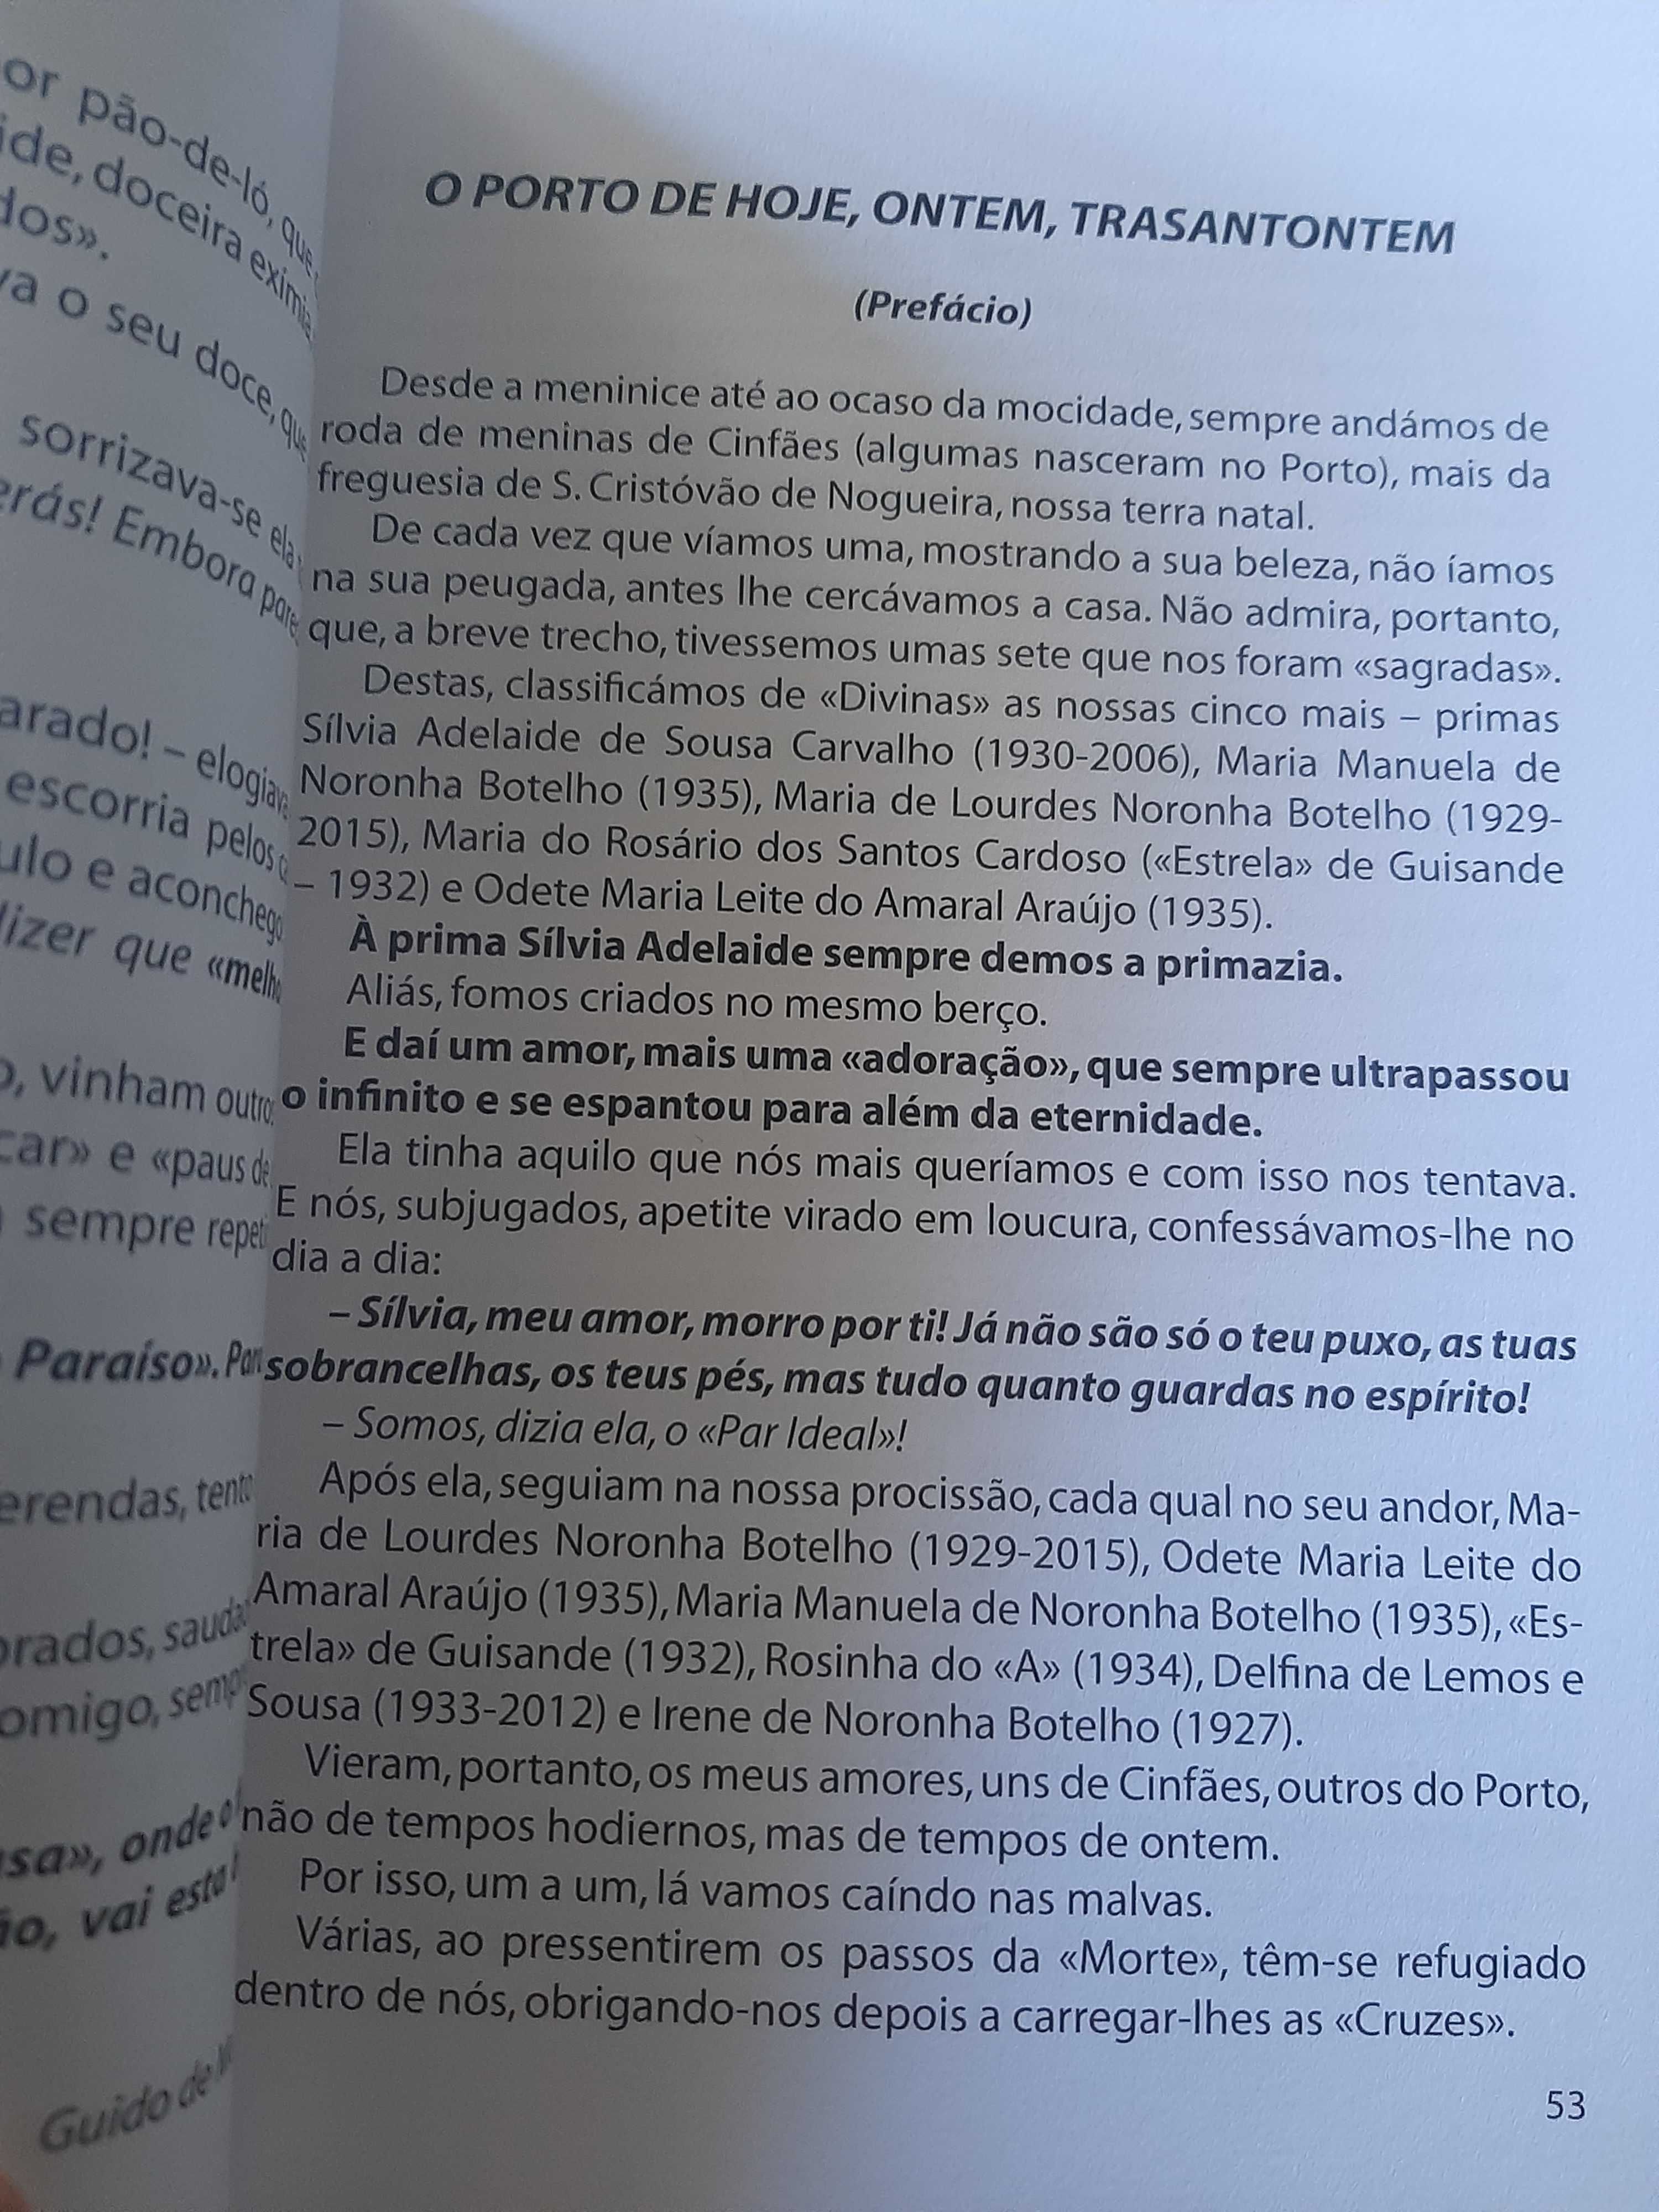 Os Comedores de Pão-de-ló 1 - Monografia do Porto - Guido Monterey